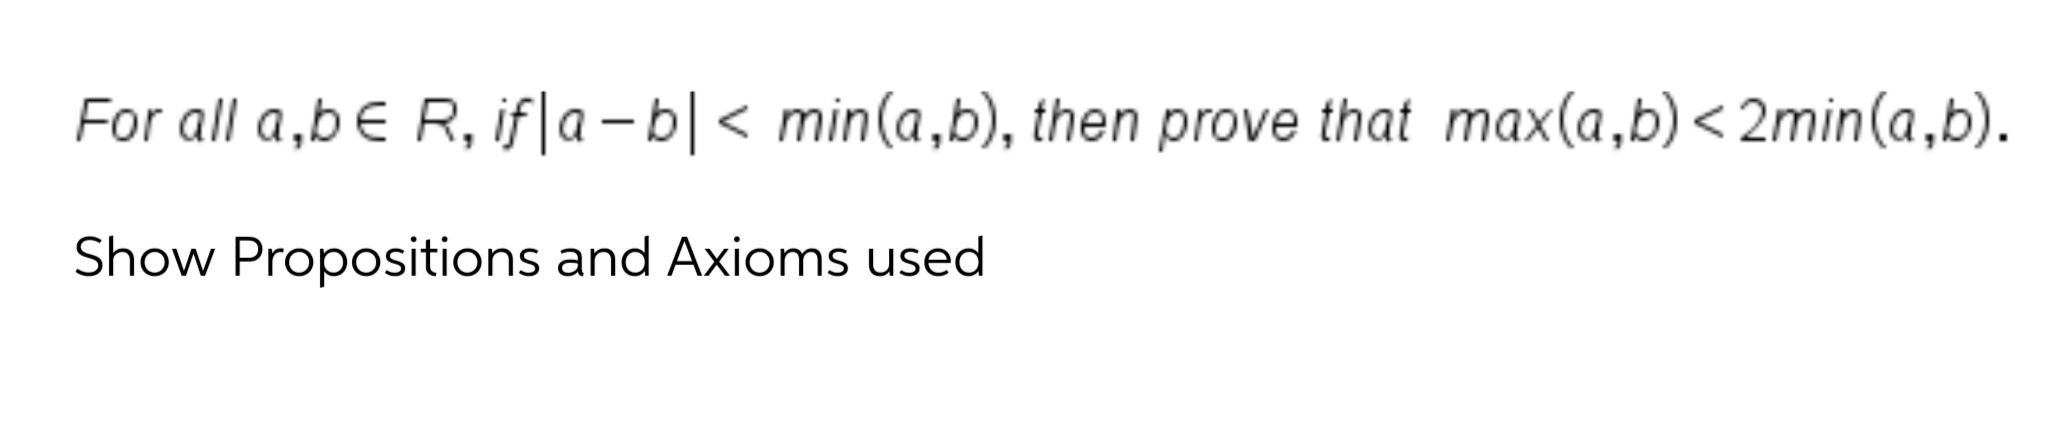 For all a,b€ R, if|a – b|< min(a,b), then prove that max(a,b)< 2min(a,b).
く
